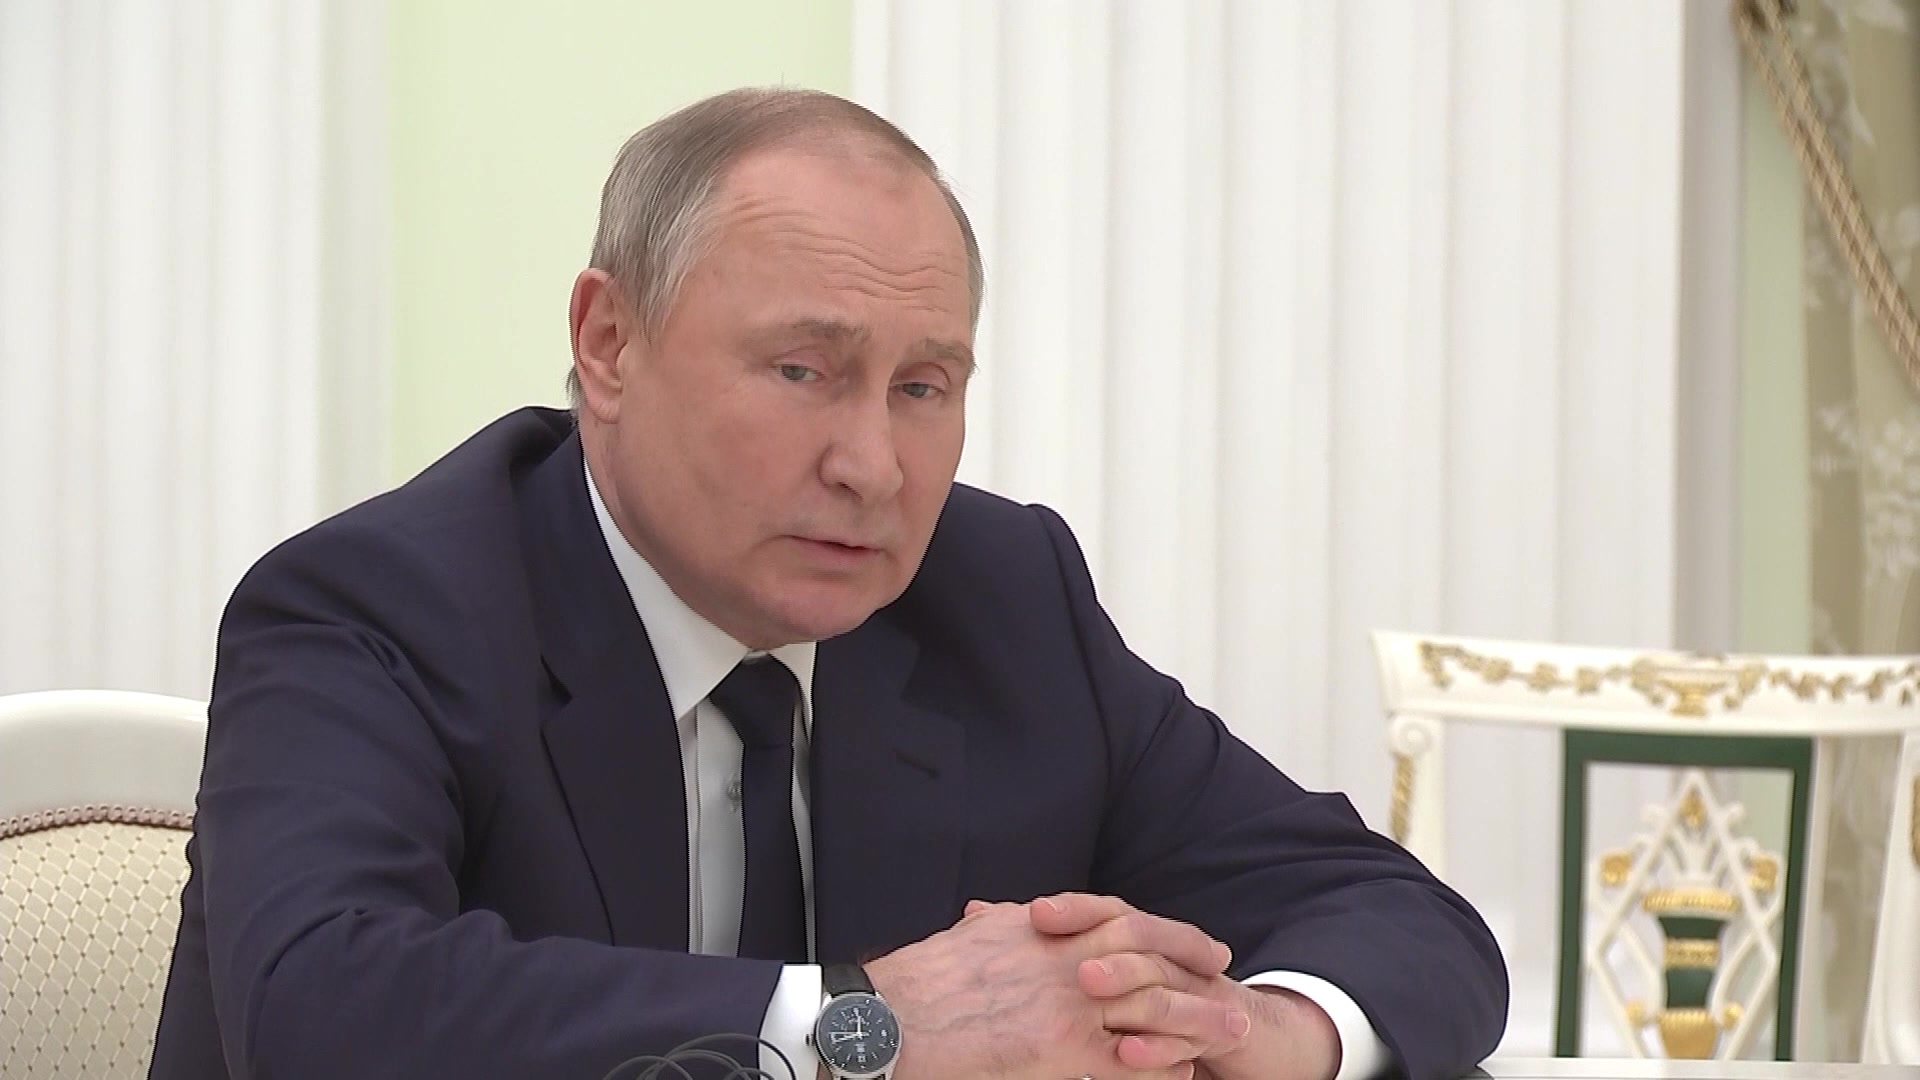 Creen que la cara y cuello hinchados de Putin podrían ser un efecto secundario del uso prolongado de esteroides